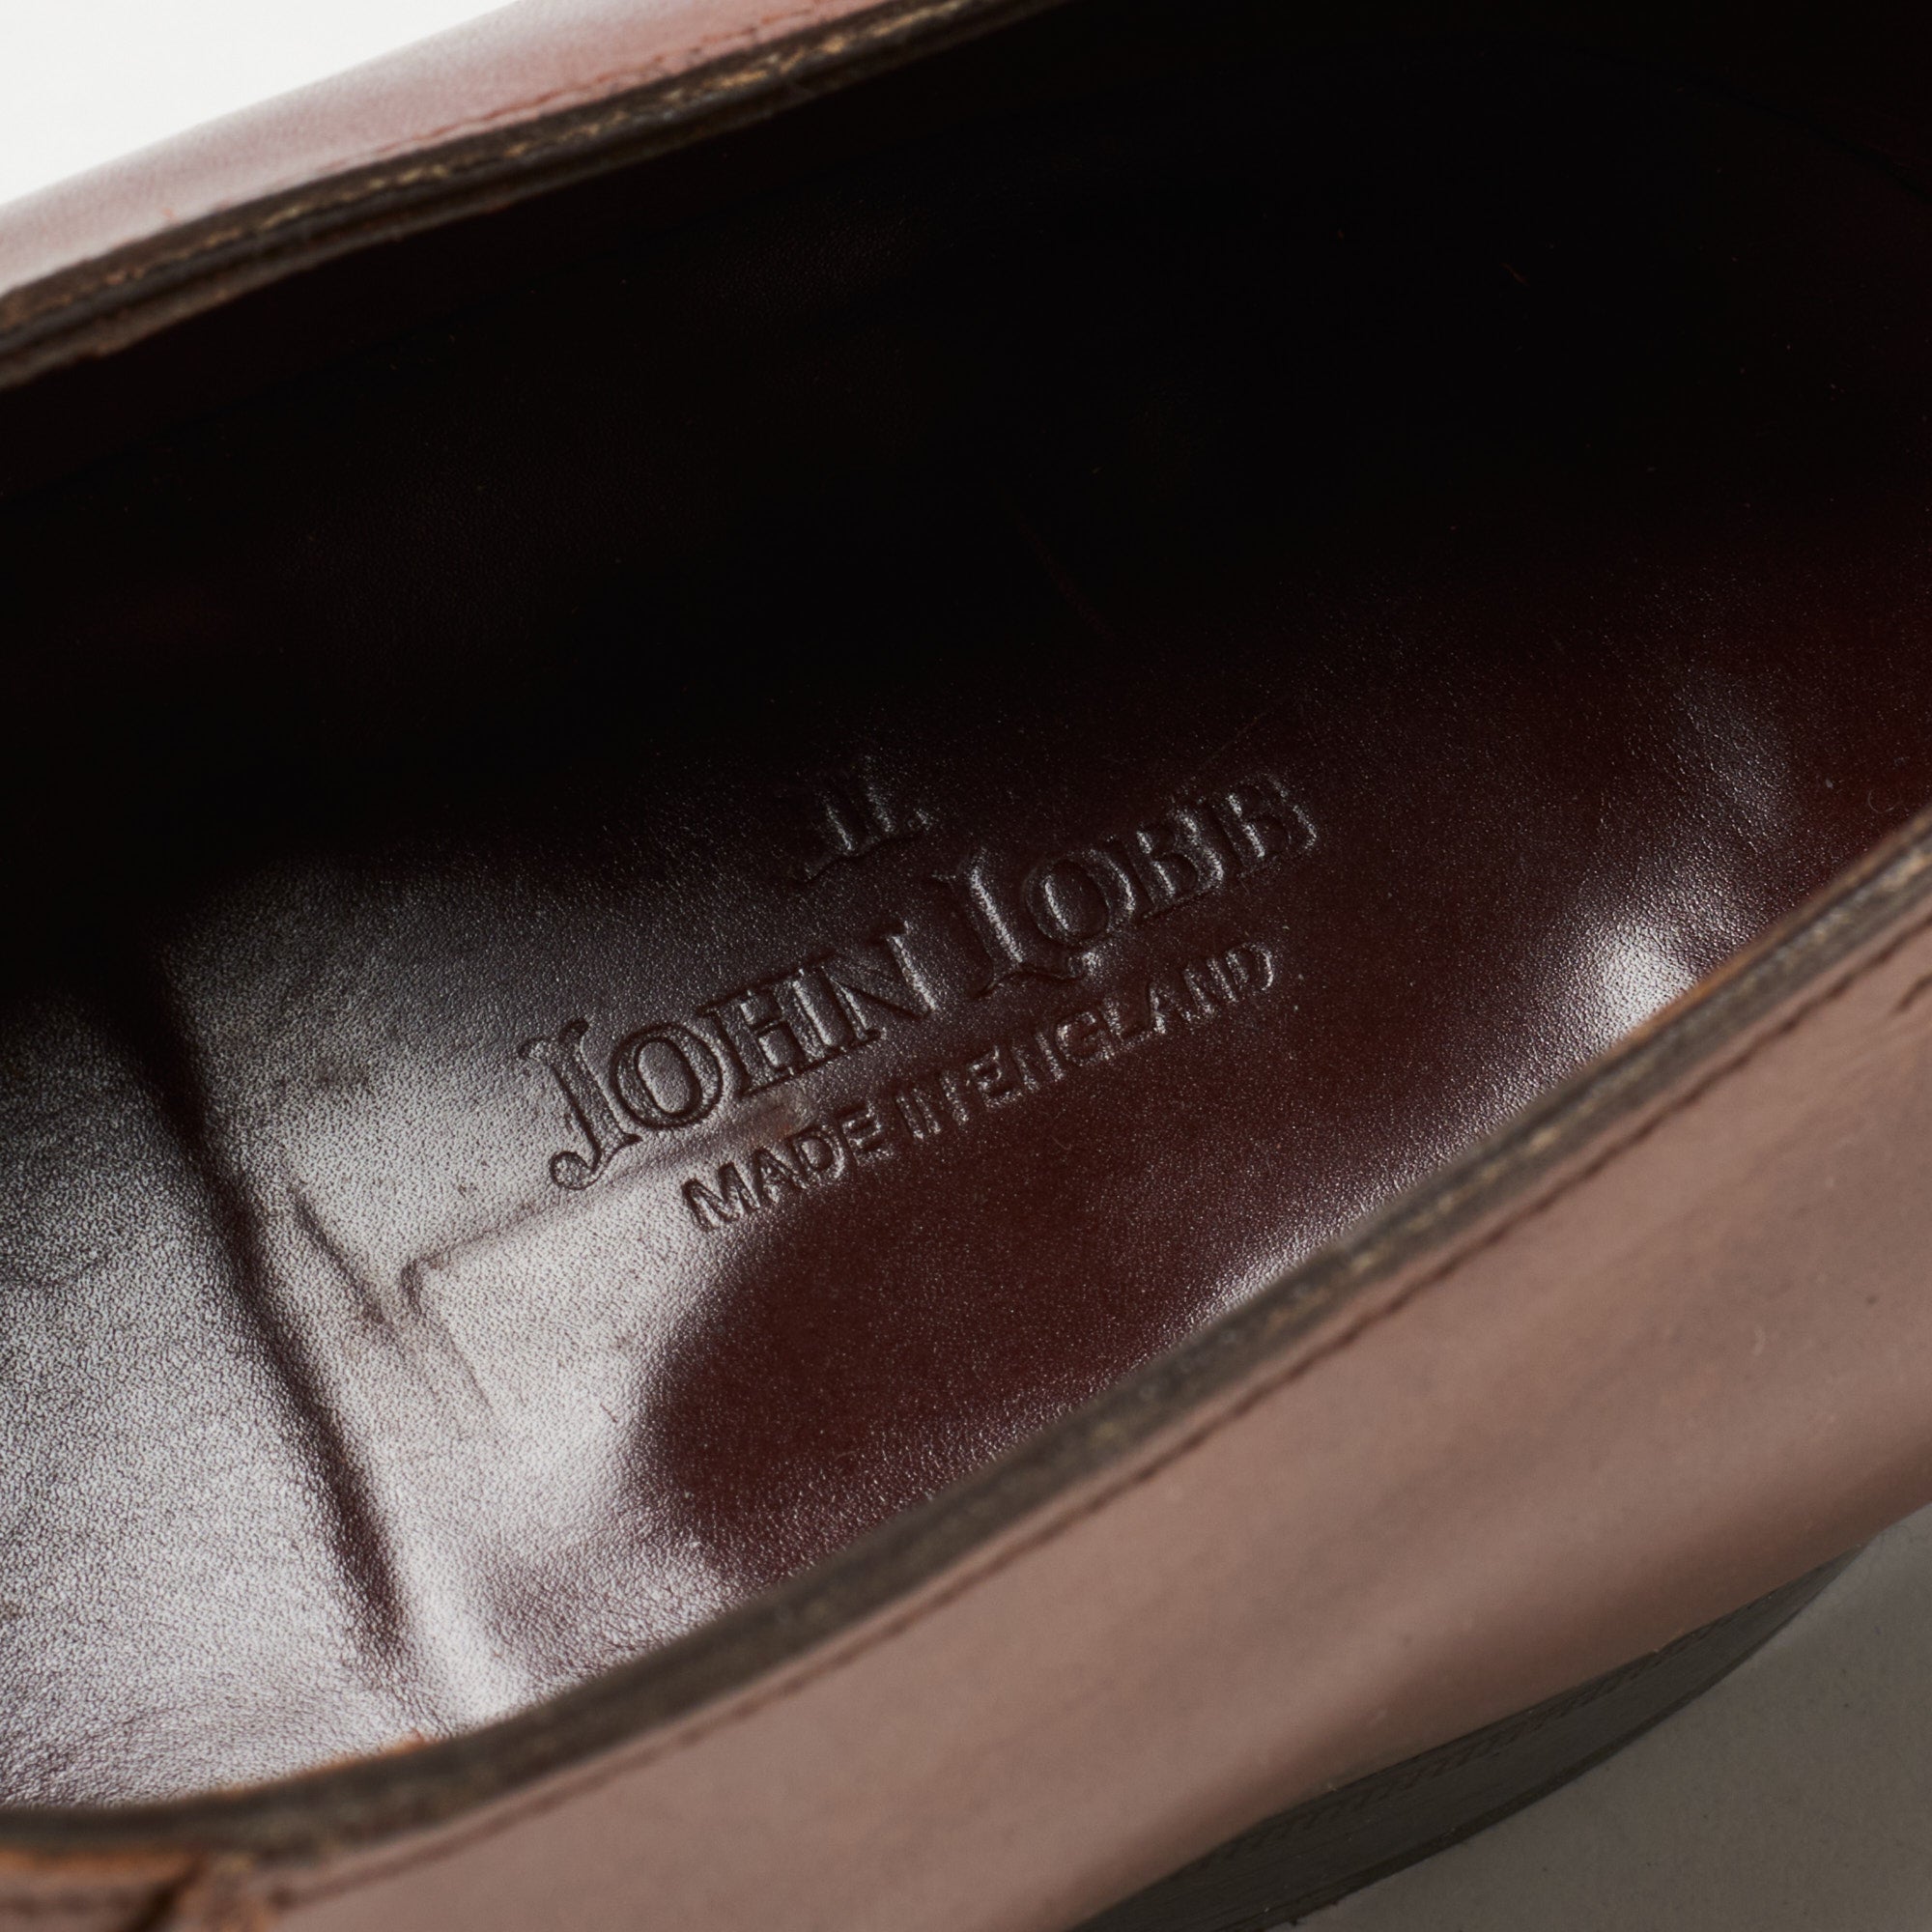 JOHN LOBB "ST CRÉPIN 2014" Limited Ed. Oxford Shoes UK 7.5E US 8.5 Last 7000 JOHN LOBB